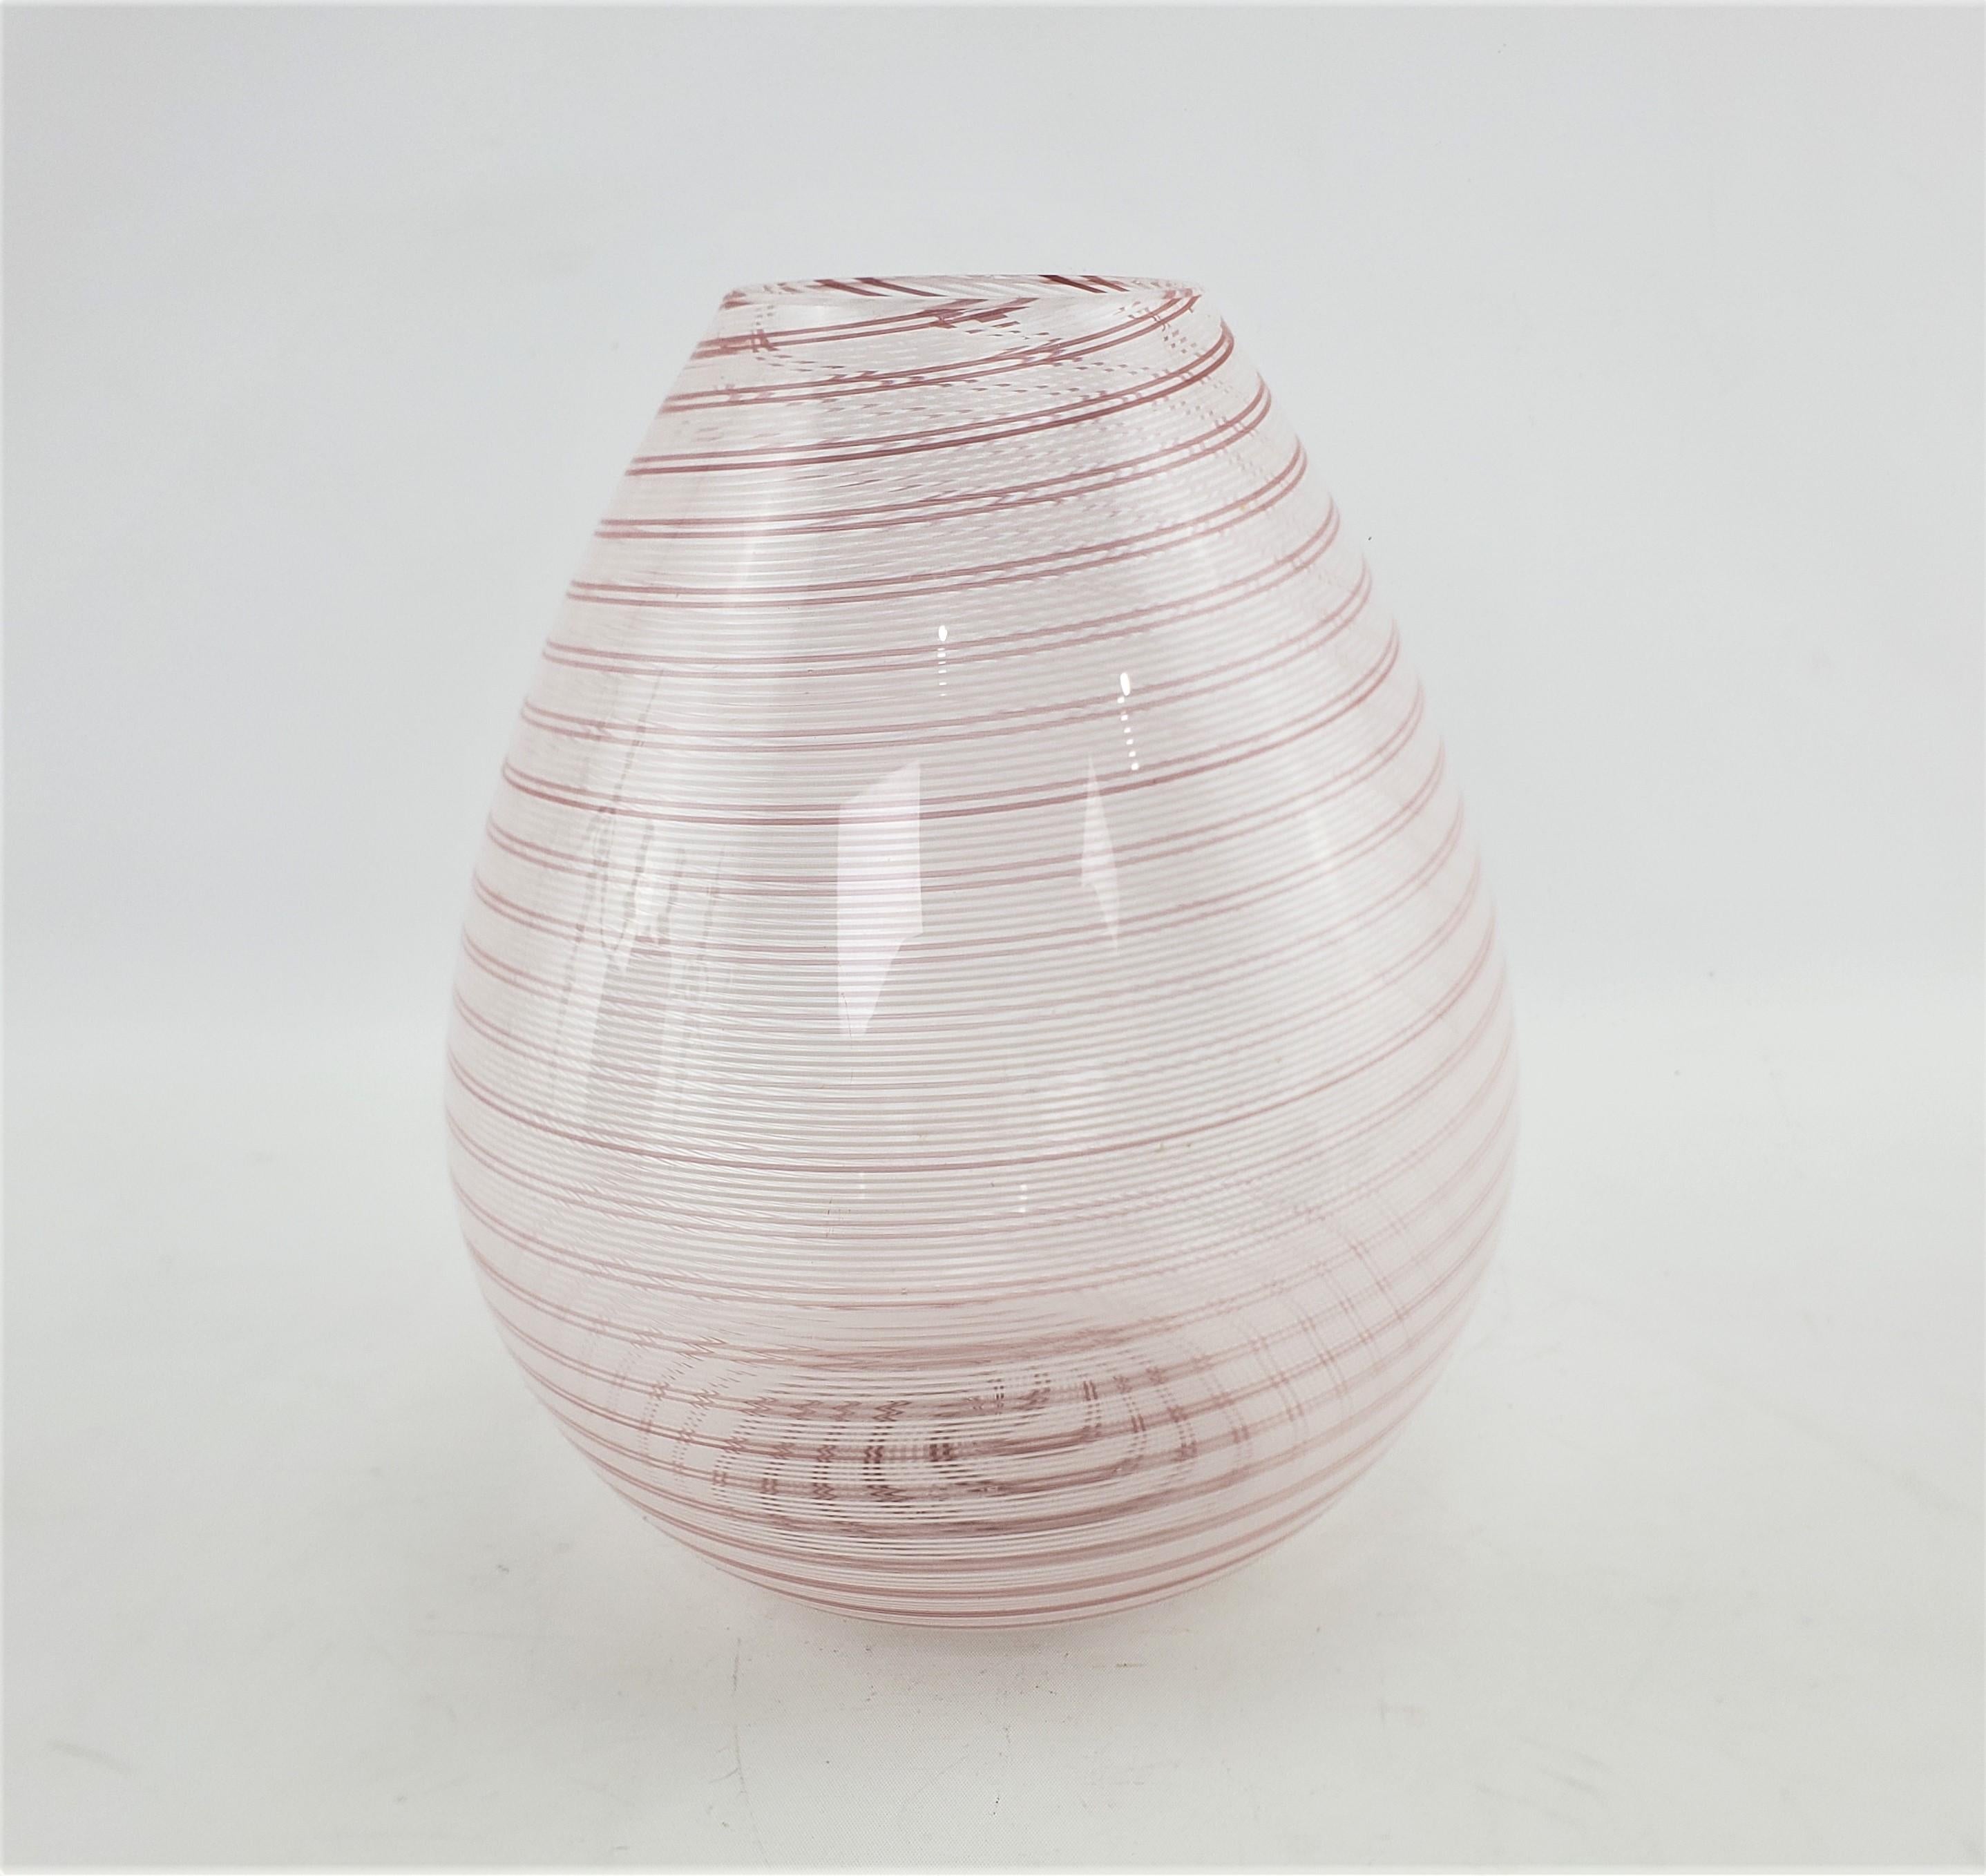 Ce vase en verre d'art signé a été réalisé par la célèbre société Barovier & Toso de Murano, en Italie, vers 1965, dans le style moderne du milieu du siècle. Le vase est en verre transparent avec des rubans tourbillonnés de bandes blanches et rouges